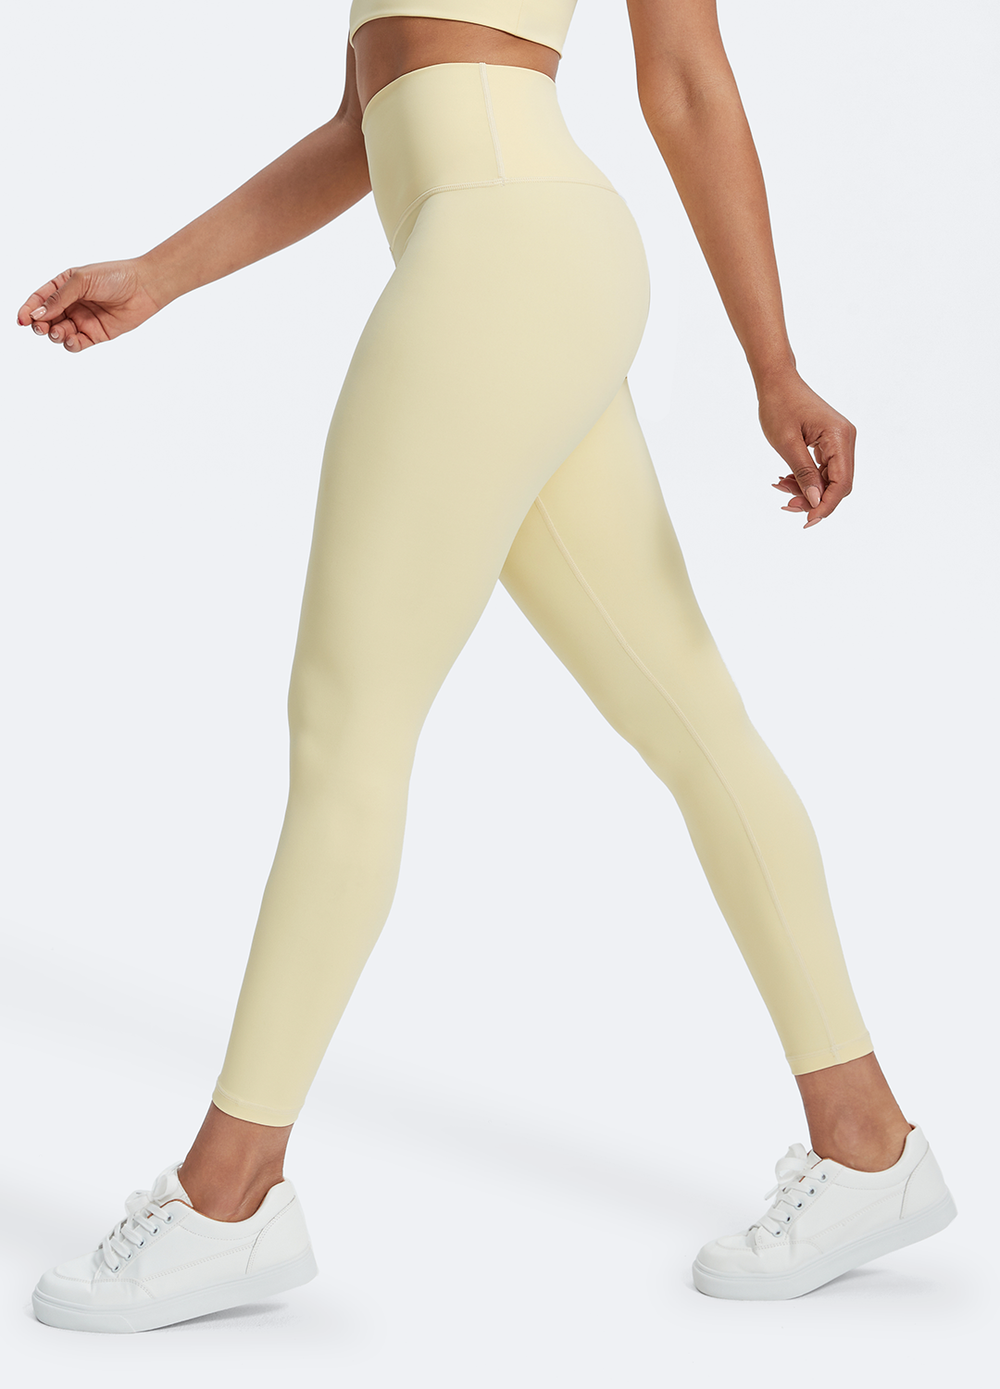 BetterMe Pale Yellow Pilates High-rise leggings for women